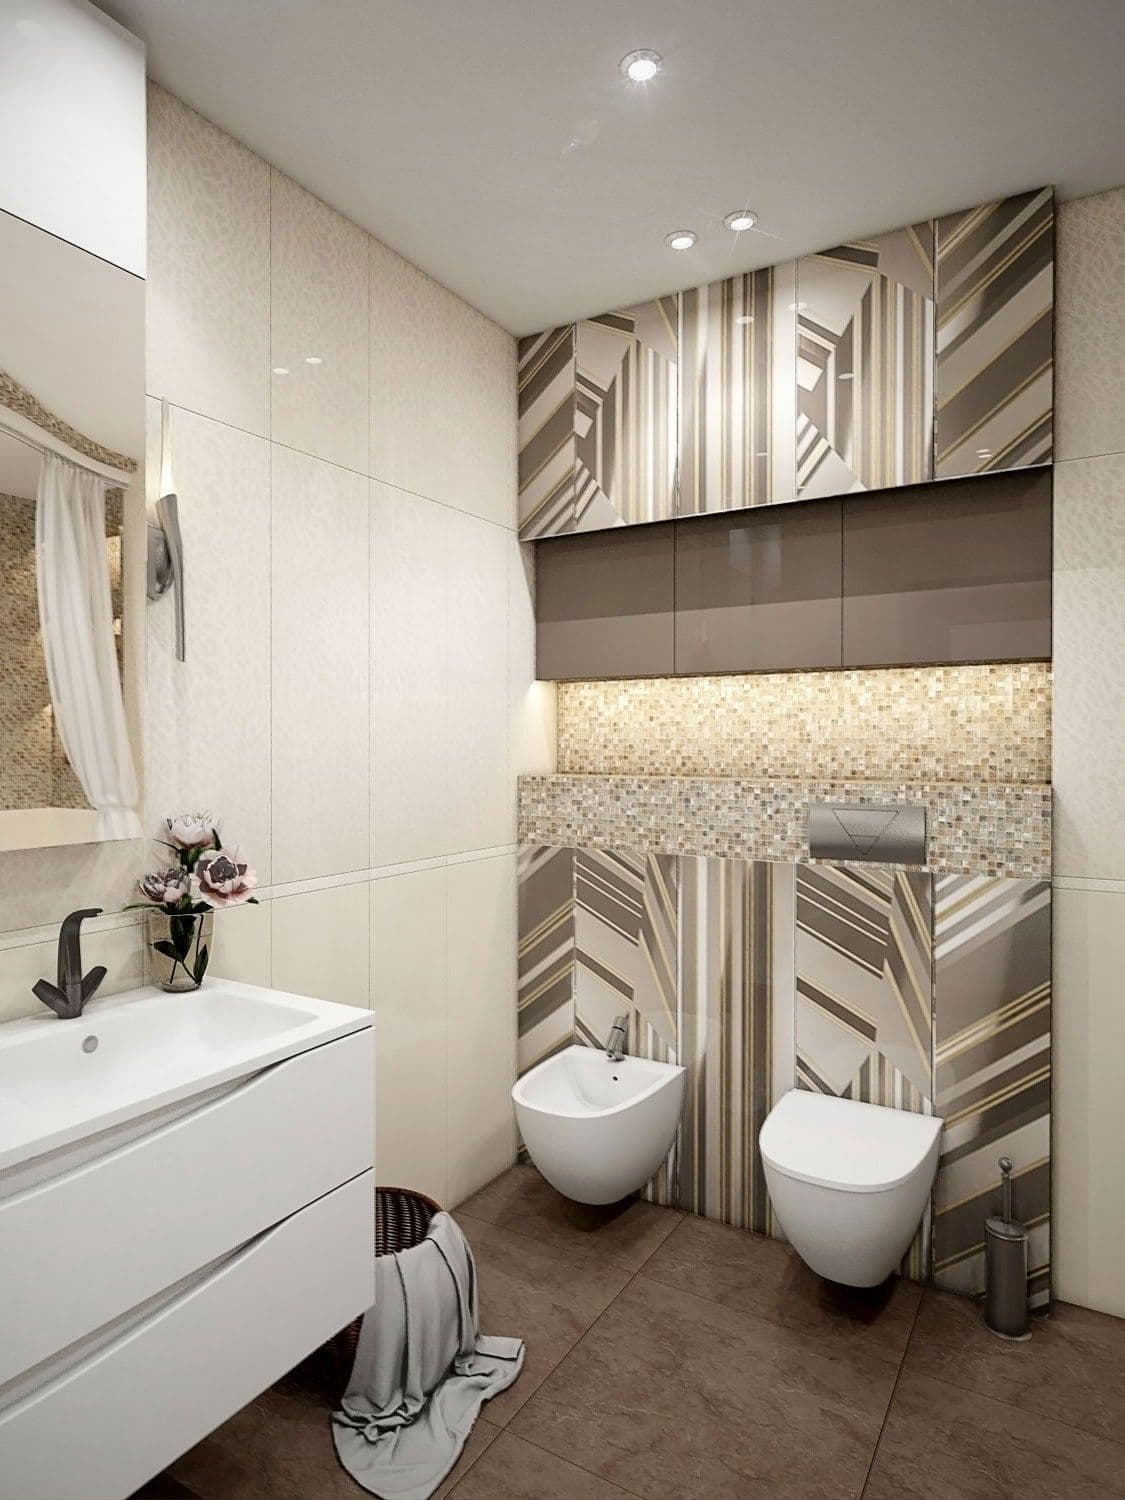 Дизайн большой ванной с туалетом и биде в бежевом цвете с вставками из мозаики